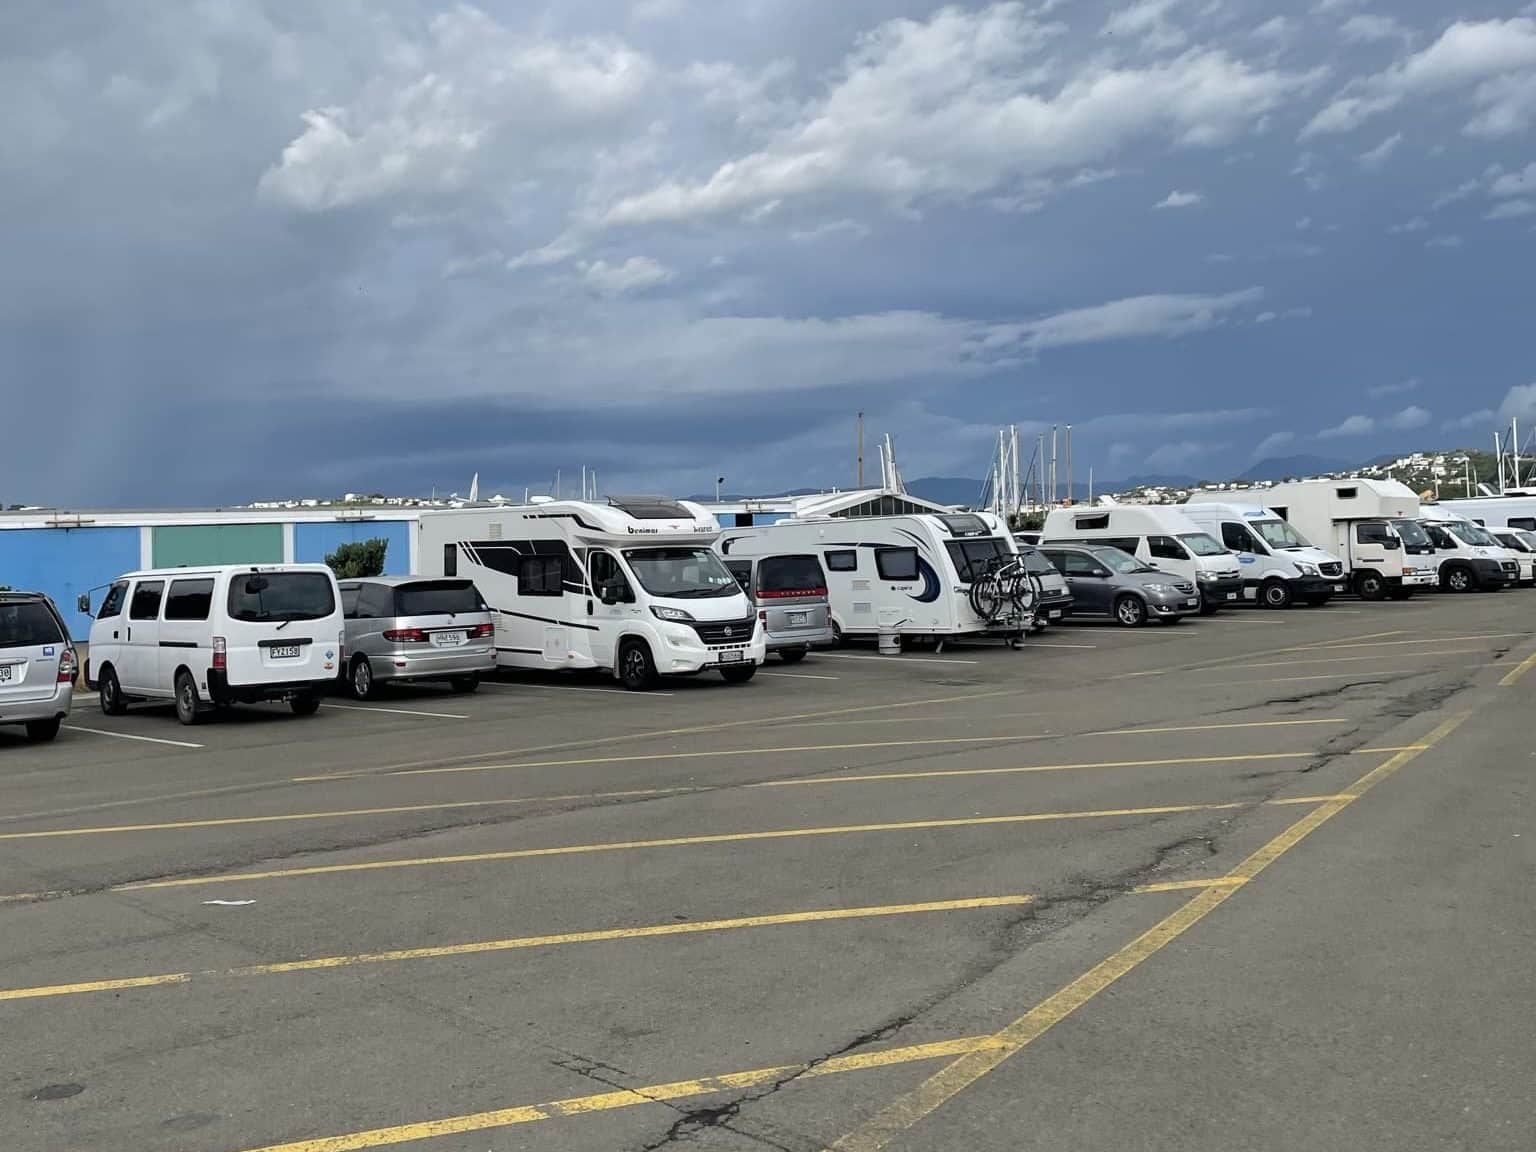 Knus parkeren met de buren in Wellington | Gratis kamperen in Nieuw-Zeeland 